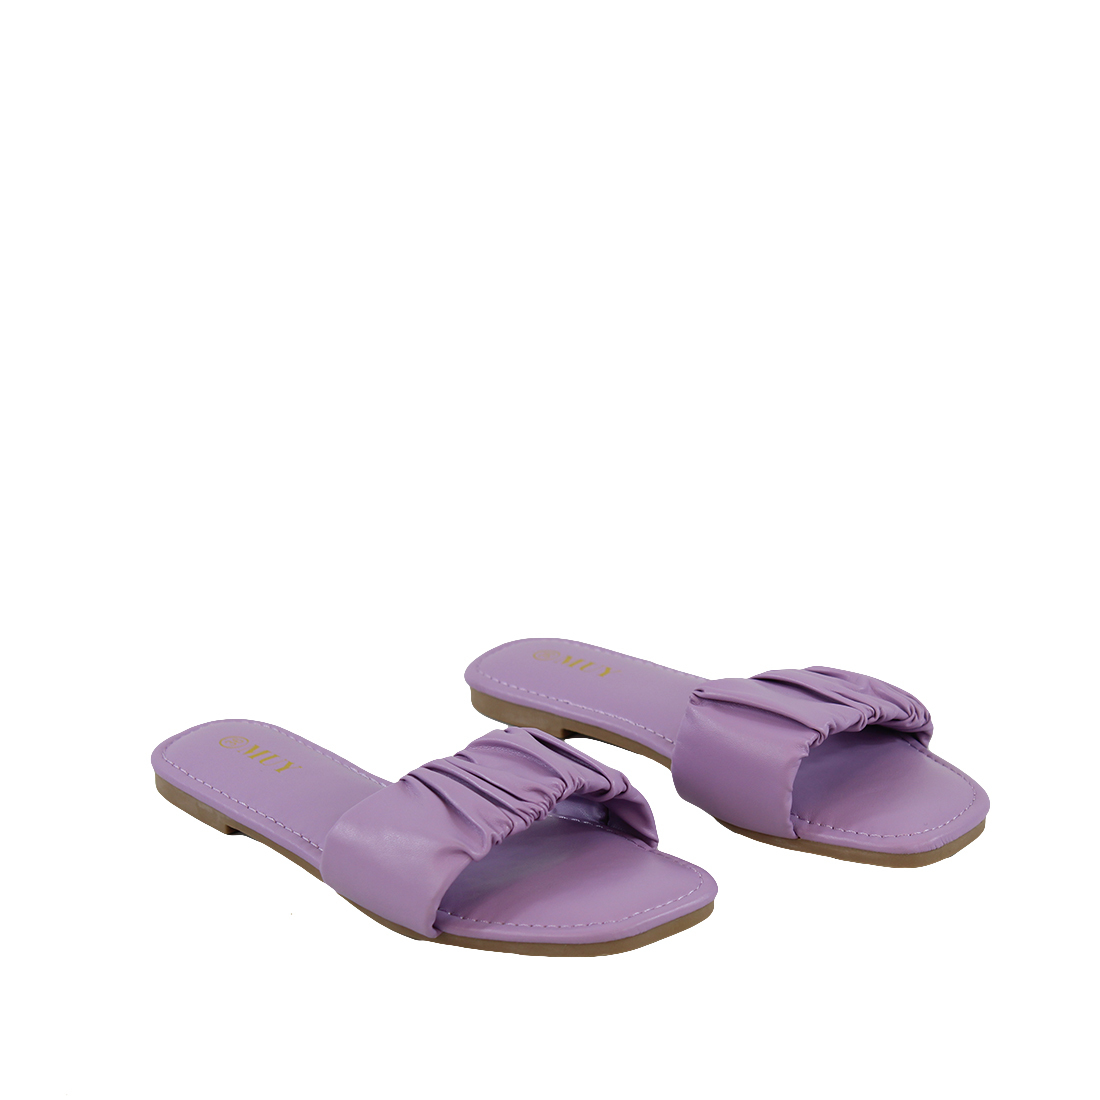 Ruched Single Band Slide Sandals